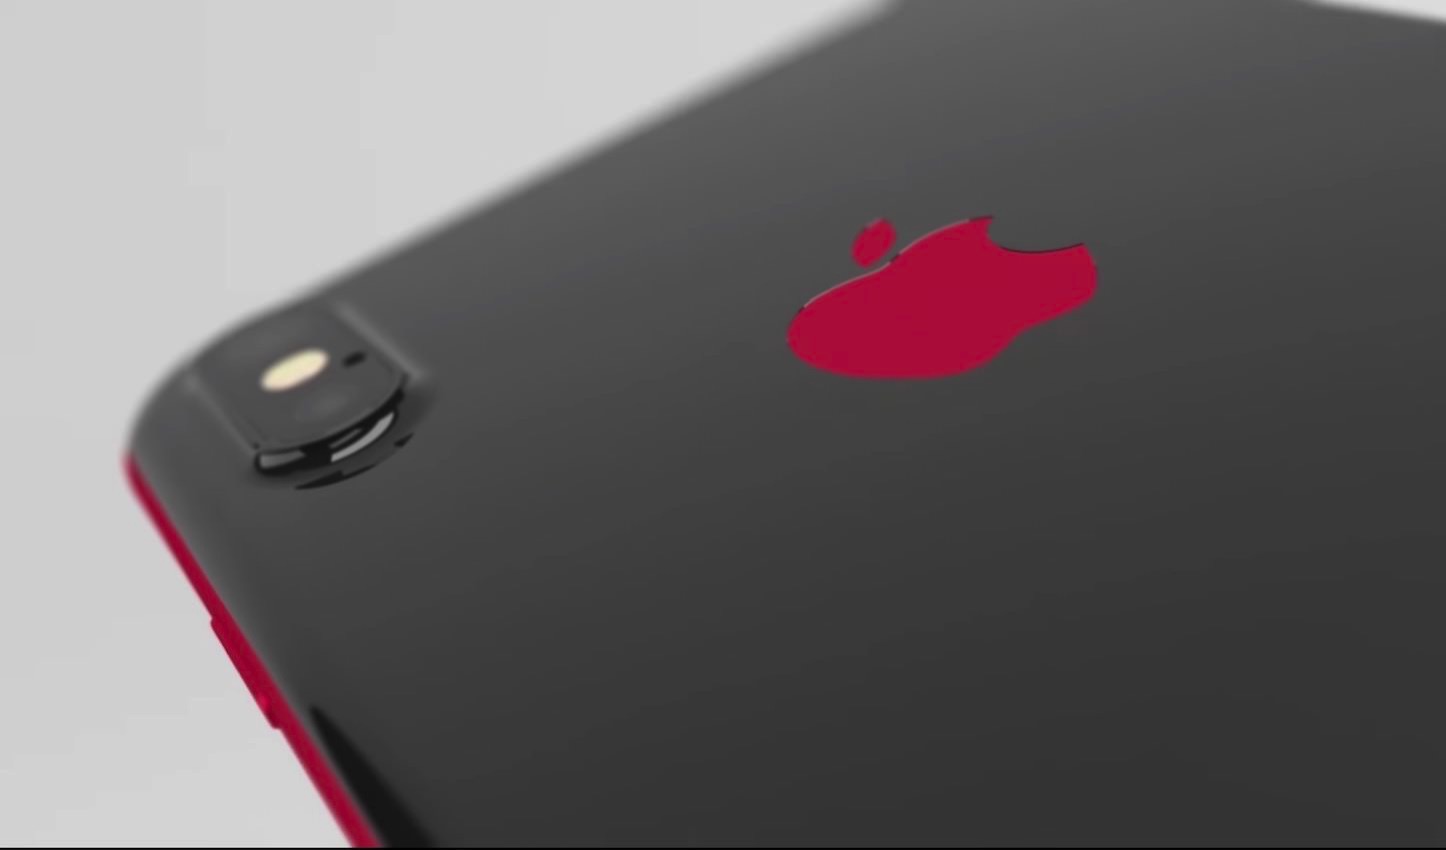 Iphone X Product Red のコンセプトイメージがカッコイイ 今すぐ出して欲しい ゴリミー